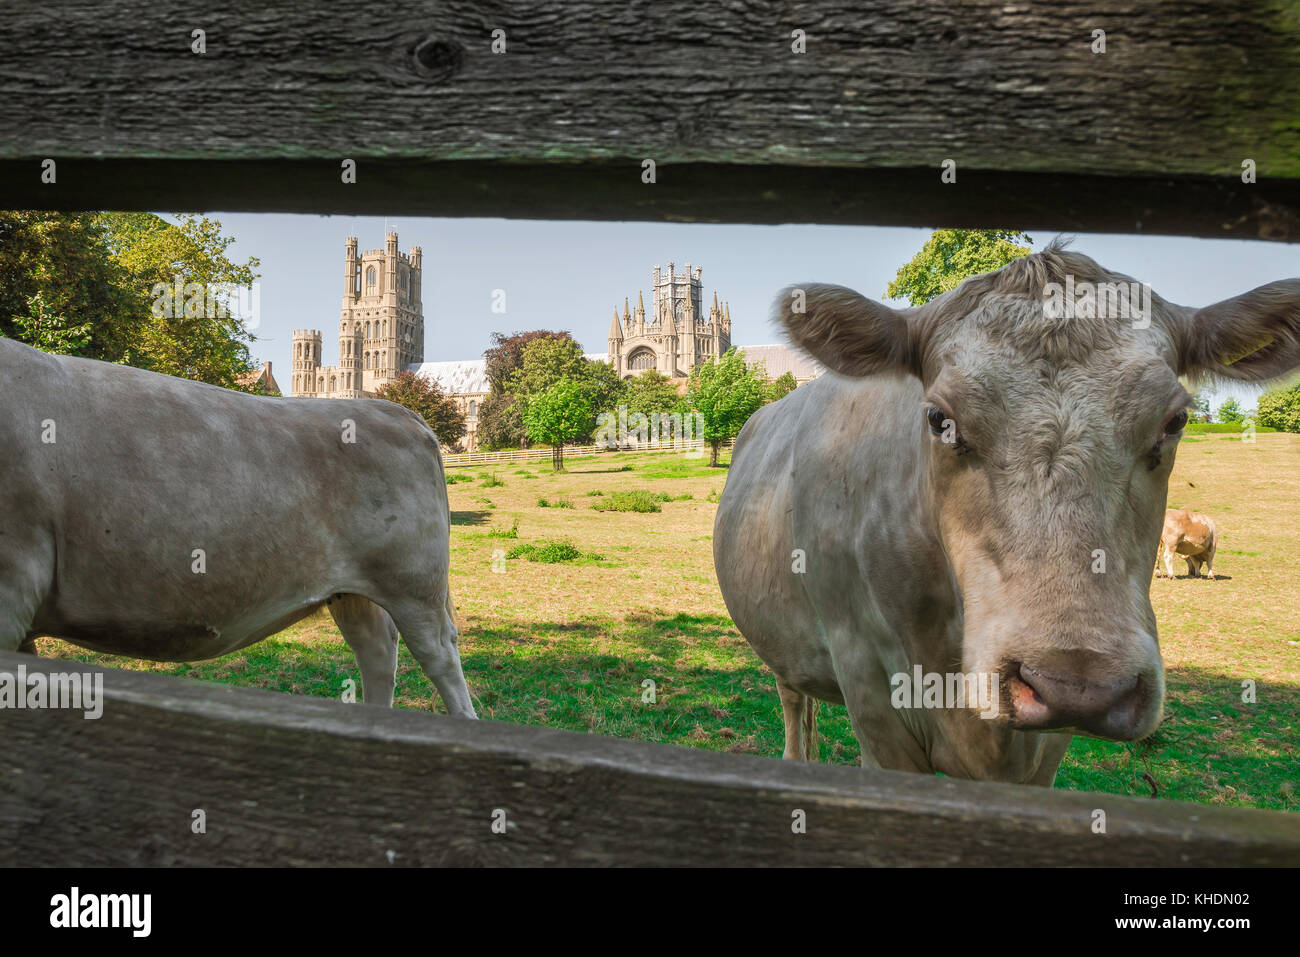 Cows UK campagna, primo piano di vista del bestiame nel Cherry Hill Park vicino alla città della cattedrale angliana orientale di Ely a Cambridgeshire, Inghilterra, Regno Unito Foto Stock